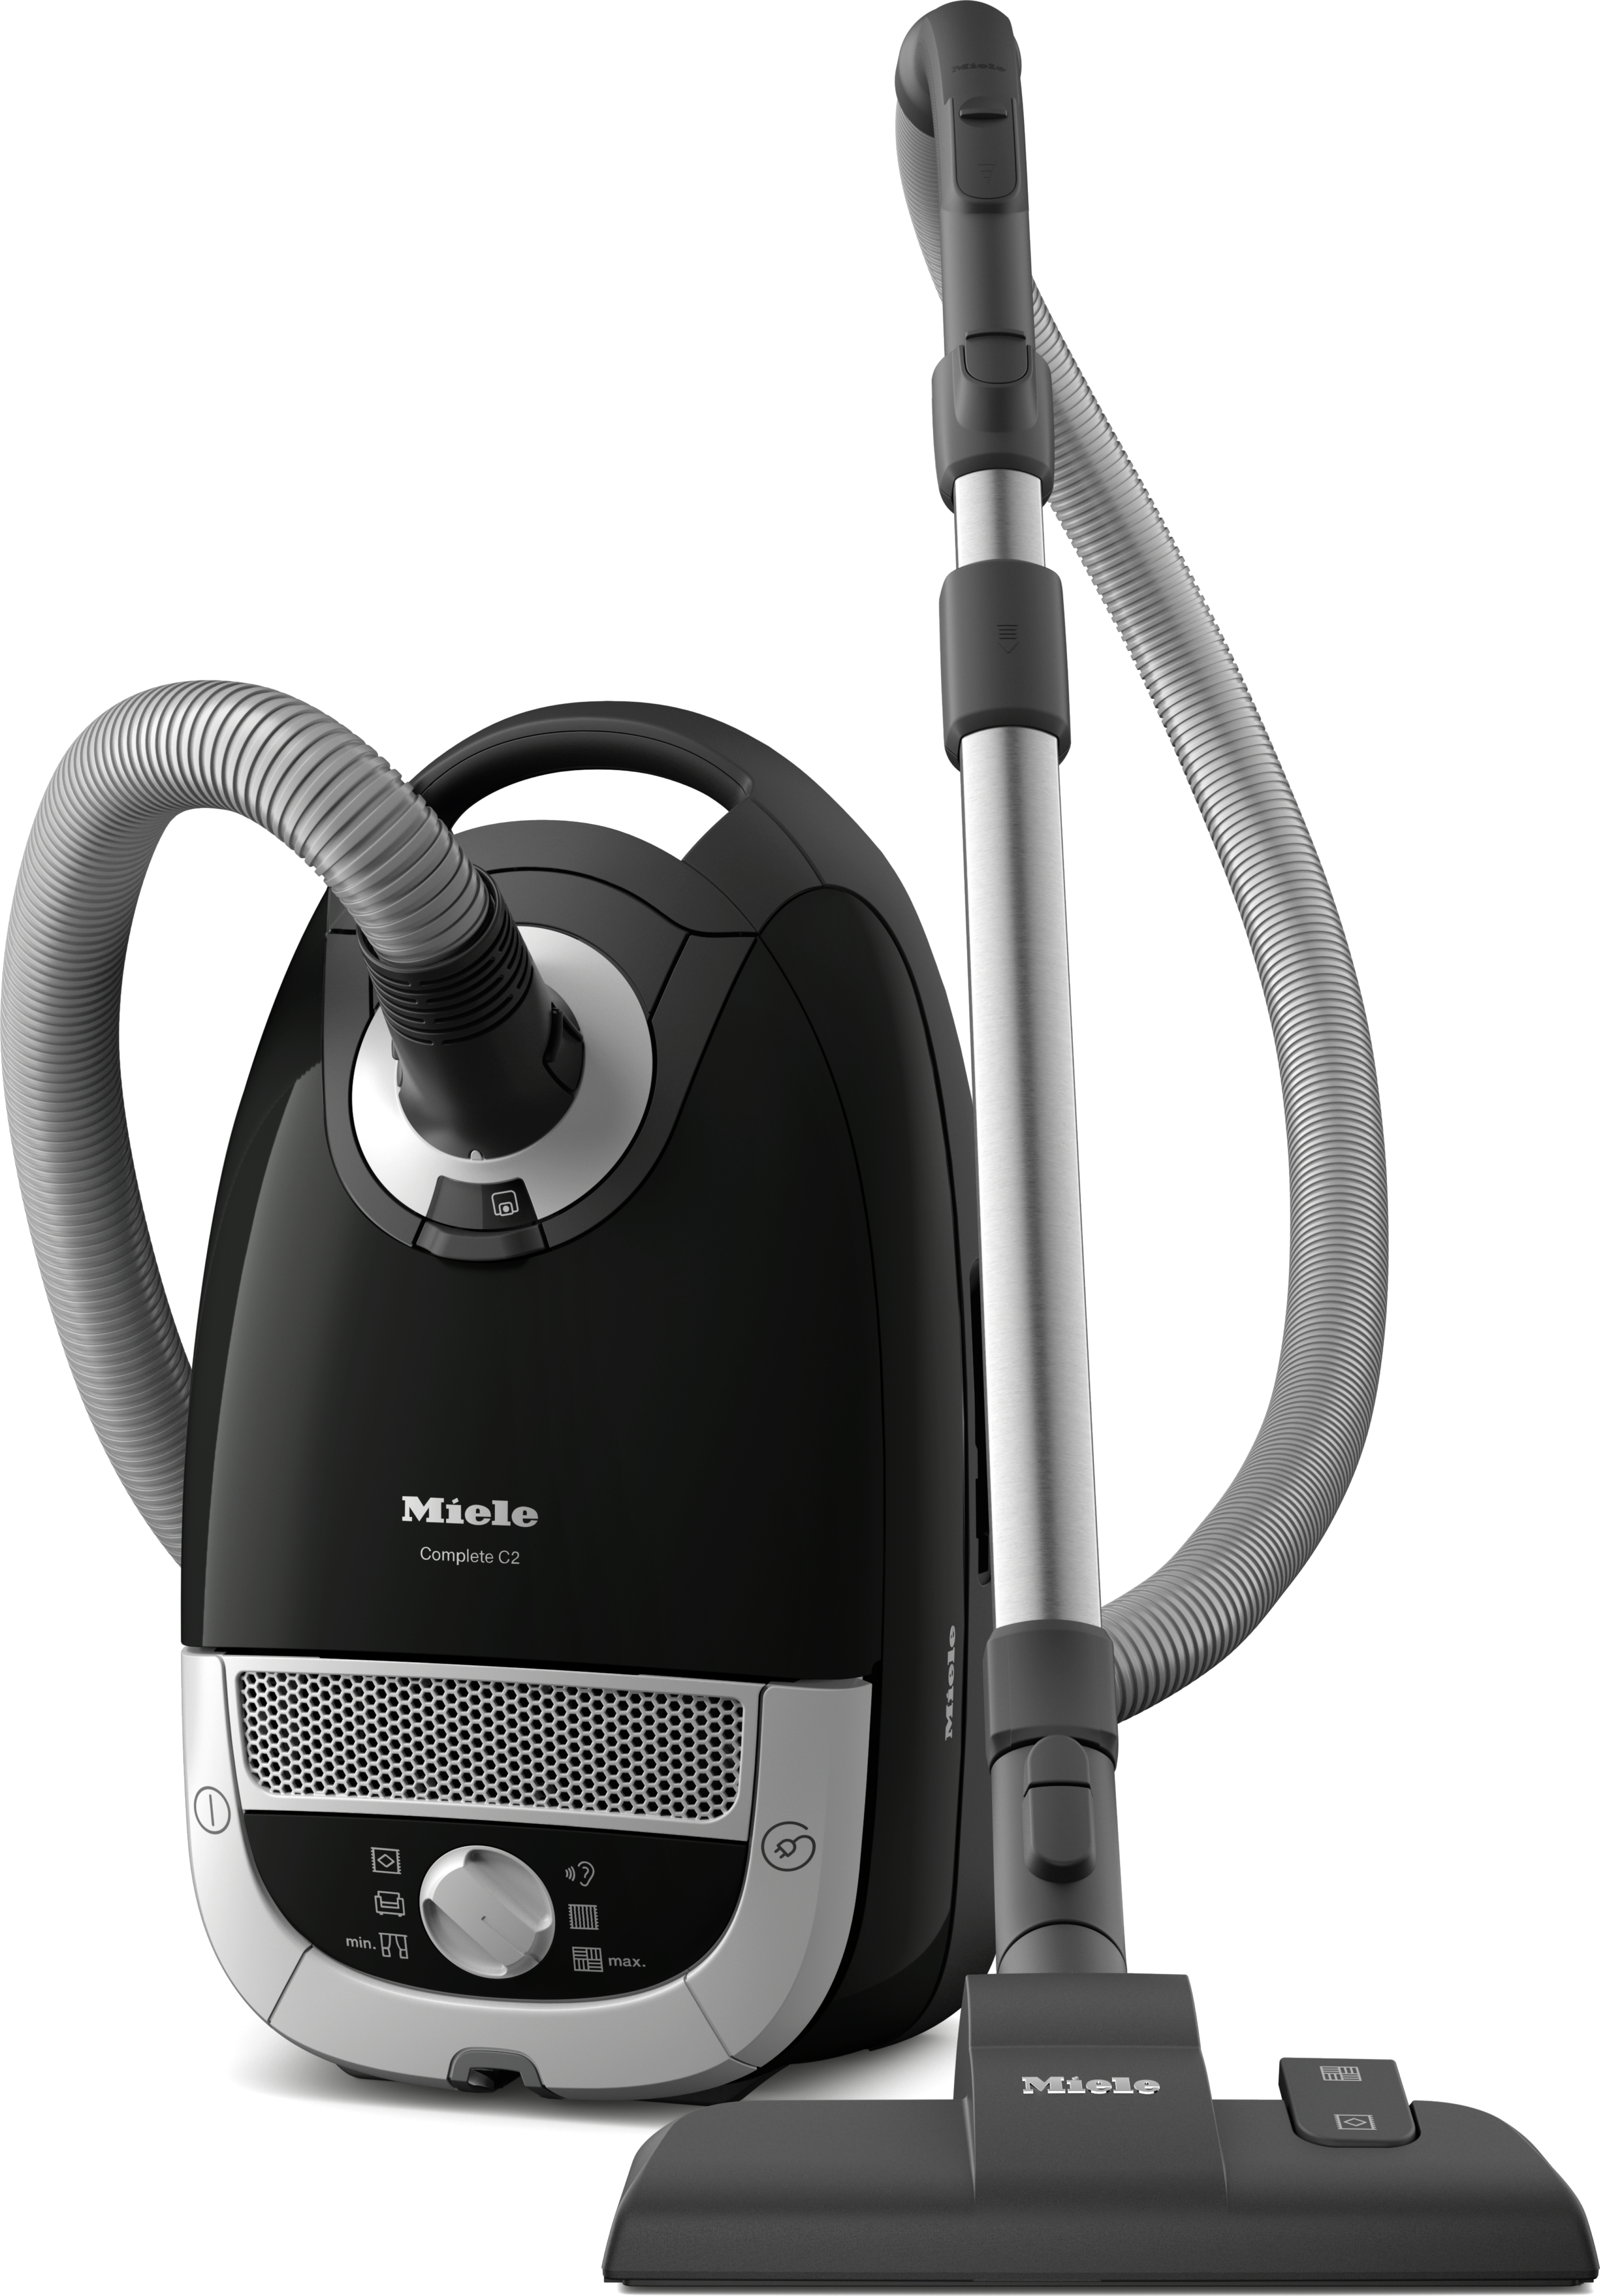 Vhbw Filtre d'aspirateur compatible avec Miele C2 Compact, C2 Complete, C3  Complete, S 2 aspirateur - Filtre HEPA contre les allergies